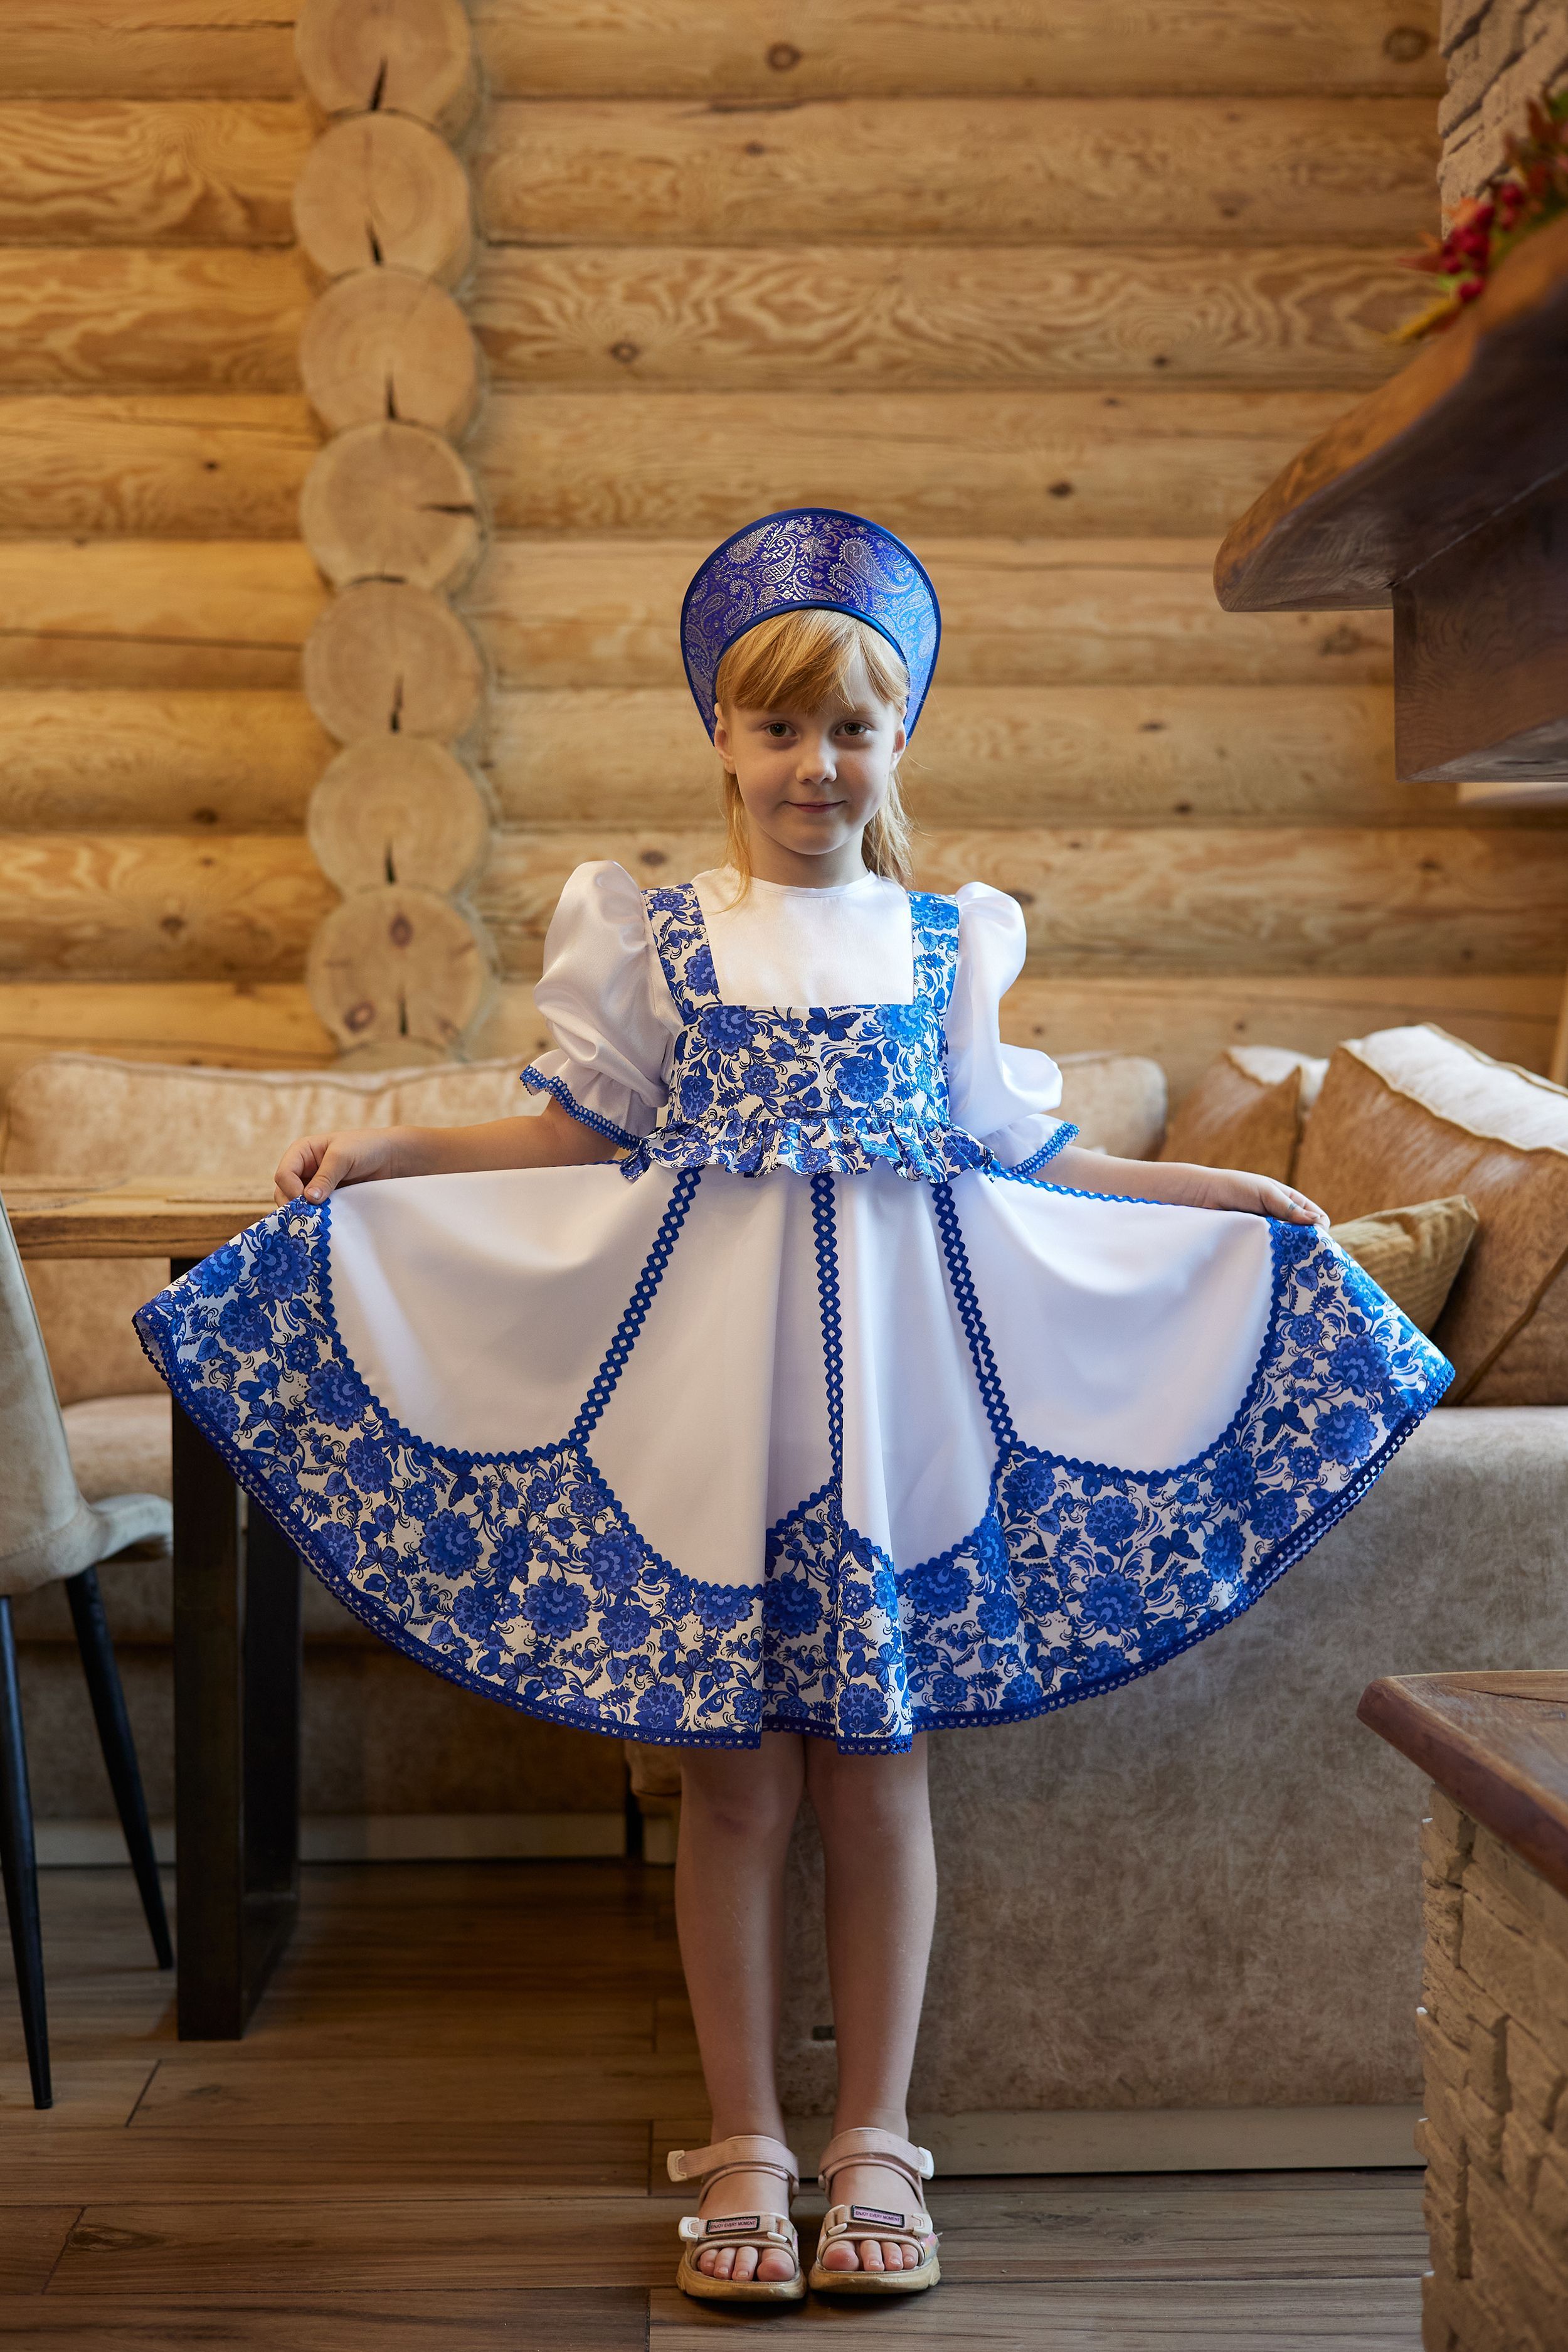 Купить карнавальные костюмы для девочек в интернет магазине kormstroytorg.ru